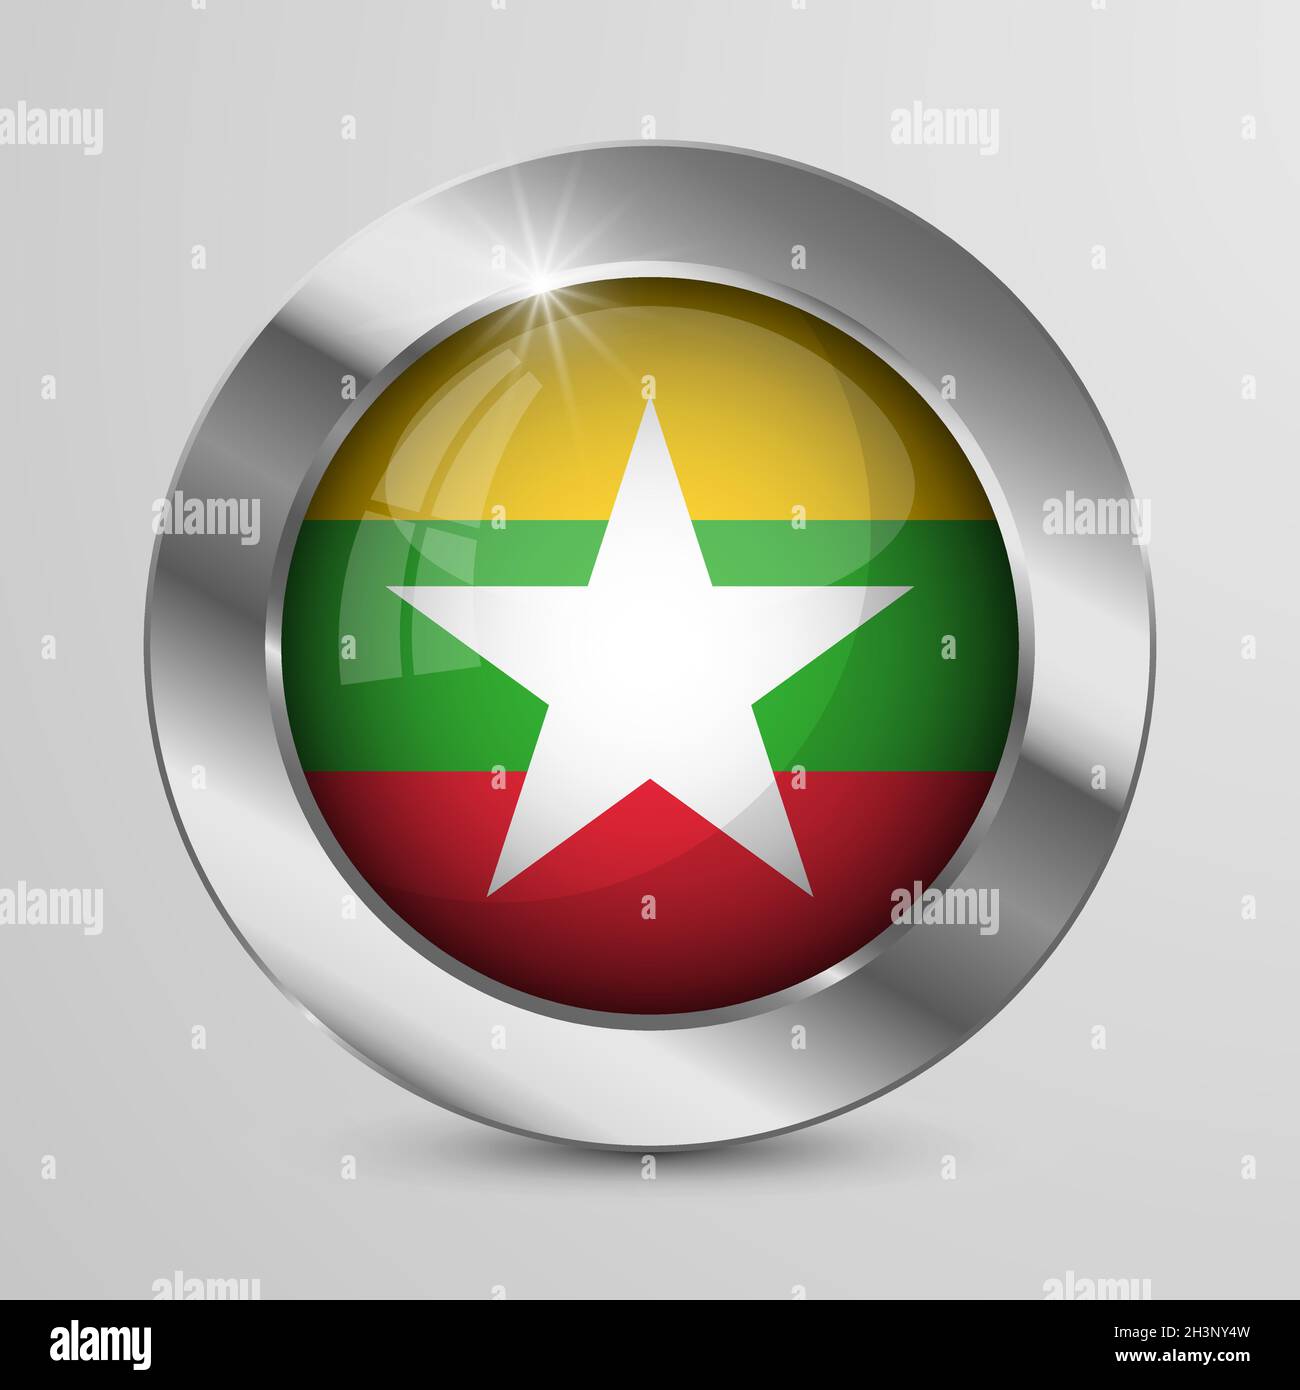 Bouton EPS10 Vector Patriotic avec couleurs de drapeau Myanmar.Un élément d'impact pour l'utilisation que vous voulez en faire. Illustration de Vecteur